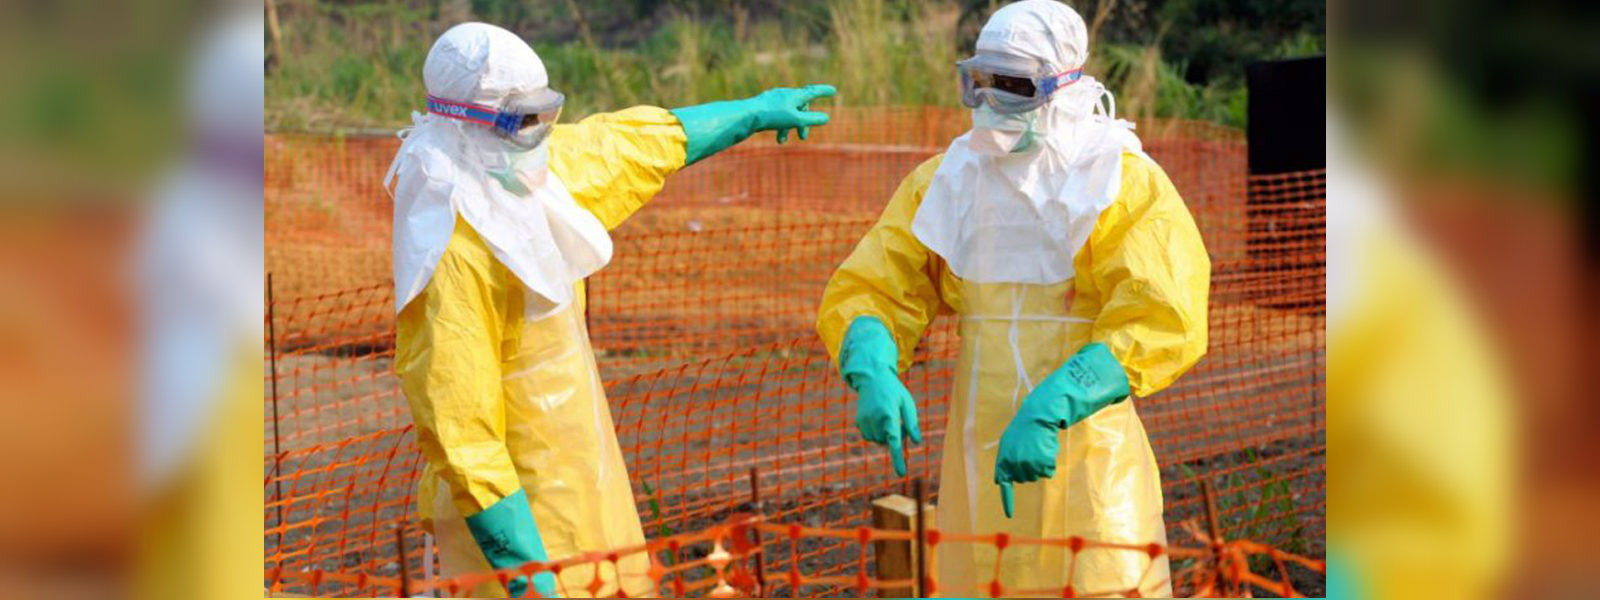 DR Congo Ebola outbreak spreads to Mbandaka city